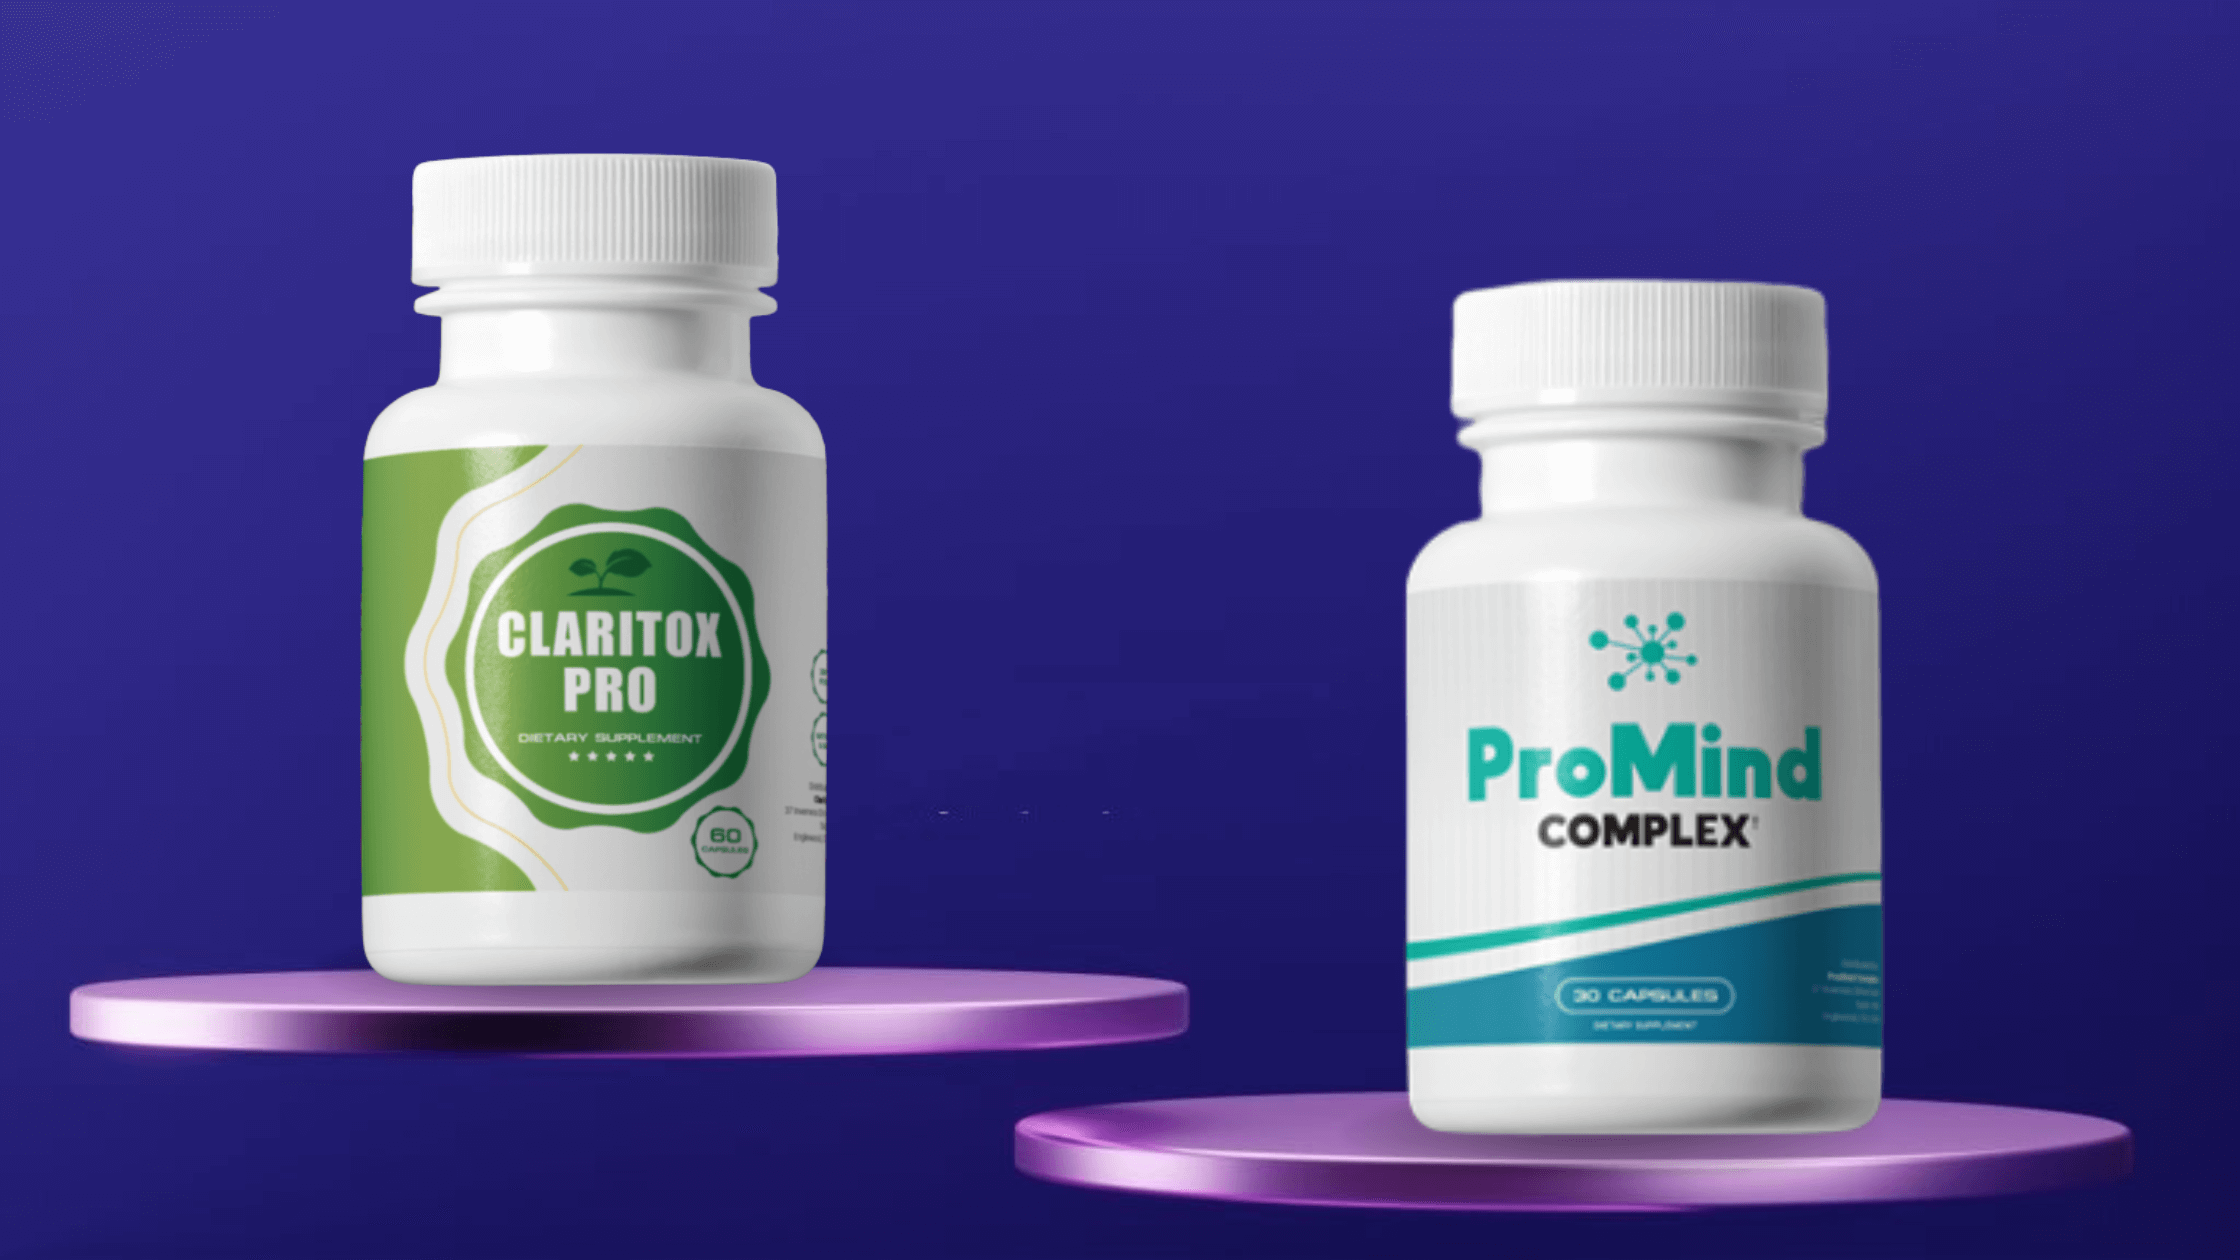 Claritox Pro Comparison